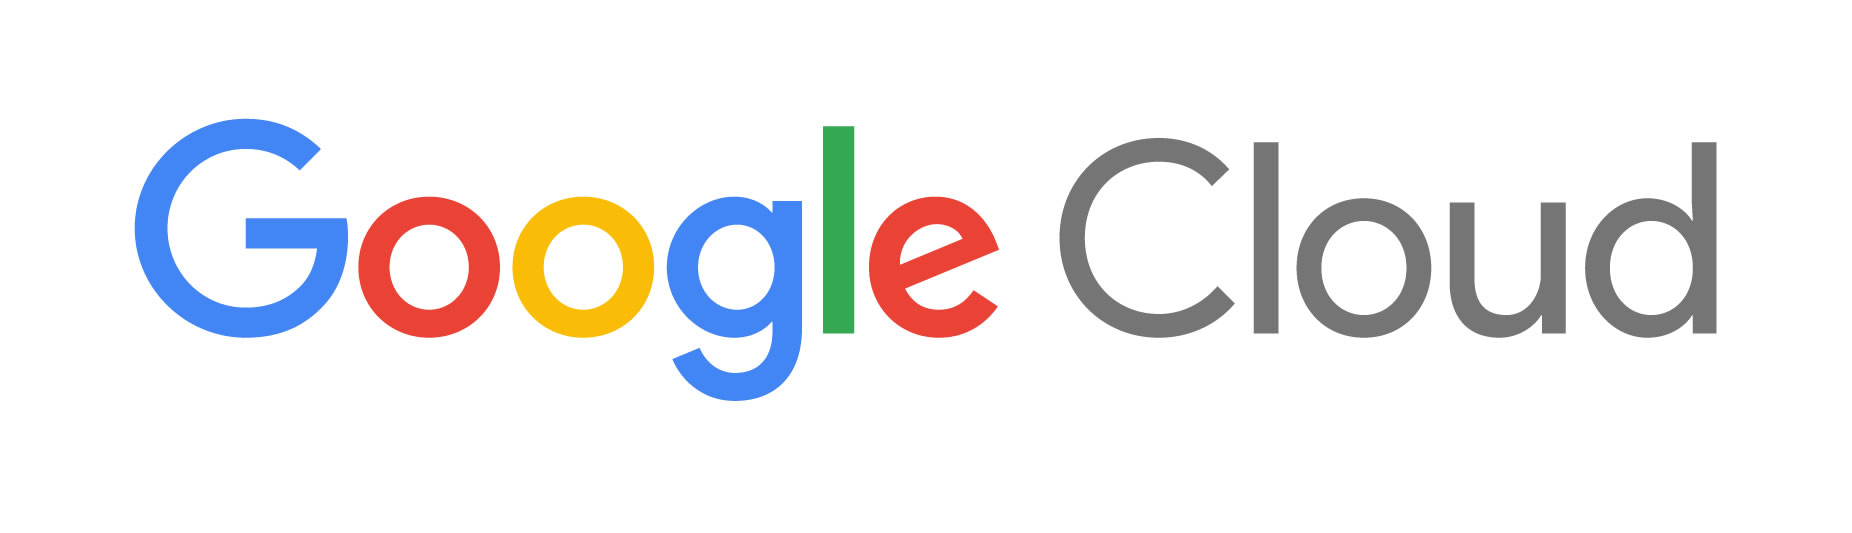 Google Cloud_Tech Alliance